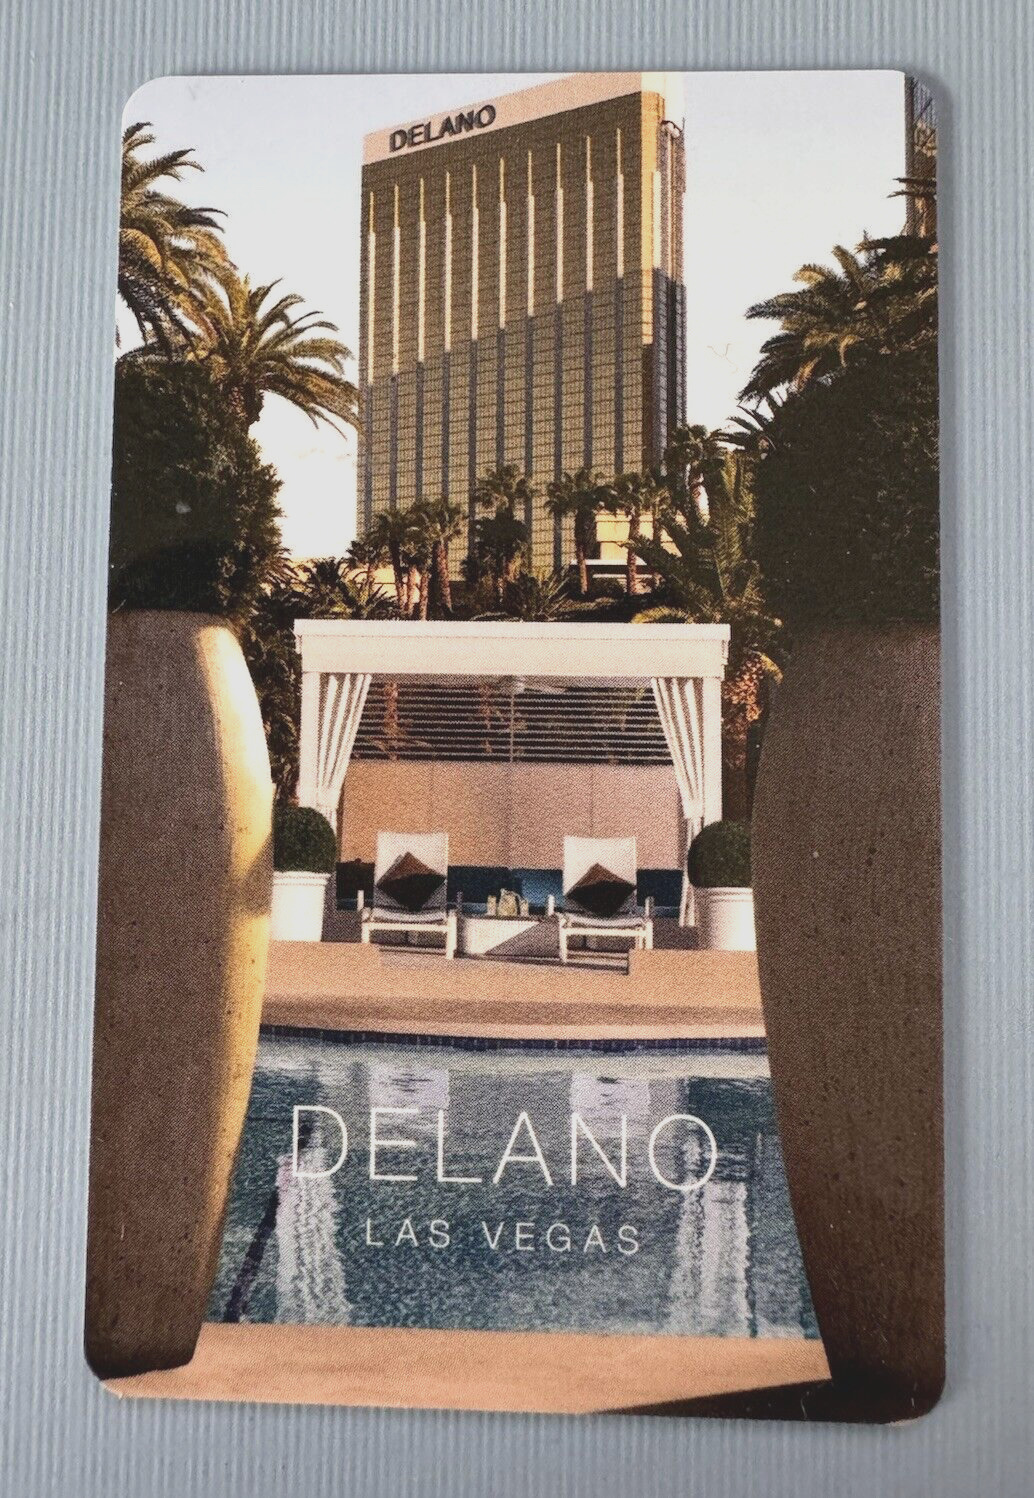 DELANO Hotel Las Vegas Souvenir Room Key Card Plastic Pool Mandalay Bay Nevada